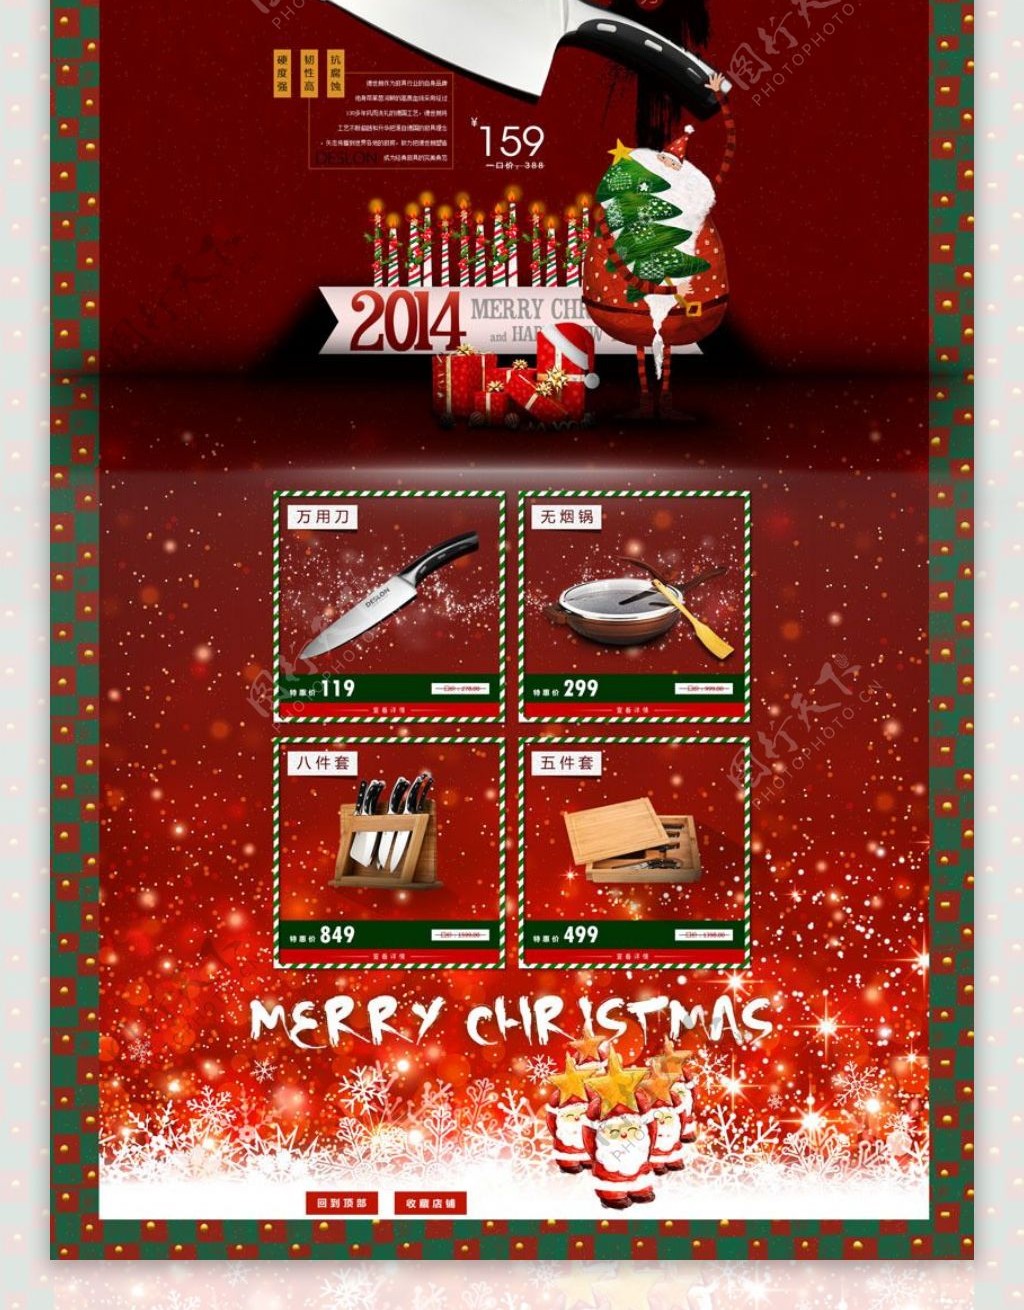 淘宝刀具圣诞节促销页面设计PSD素材